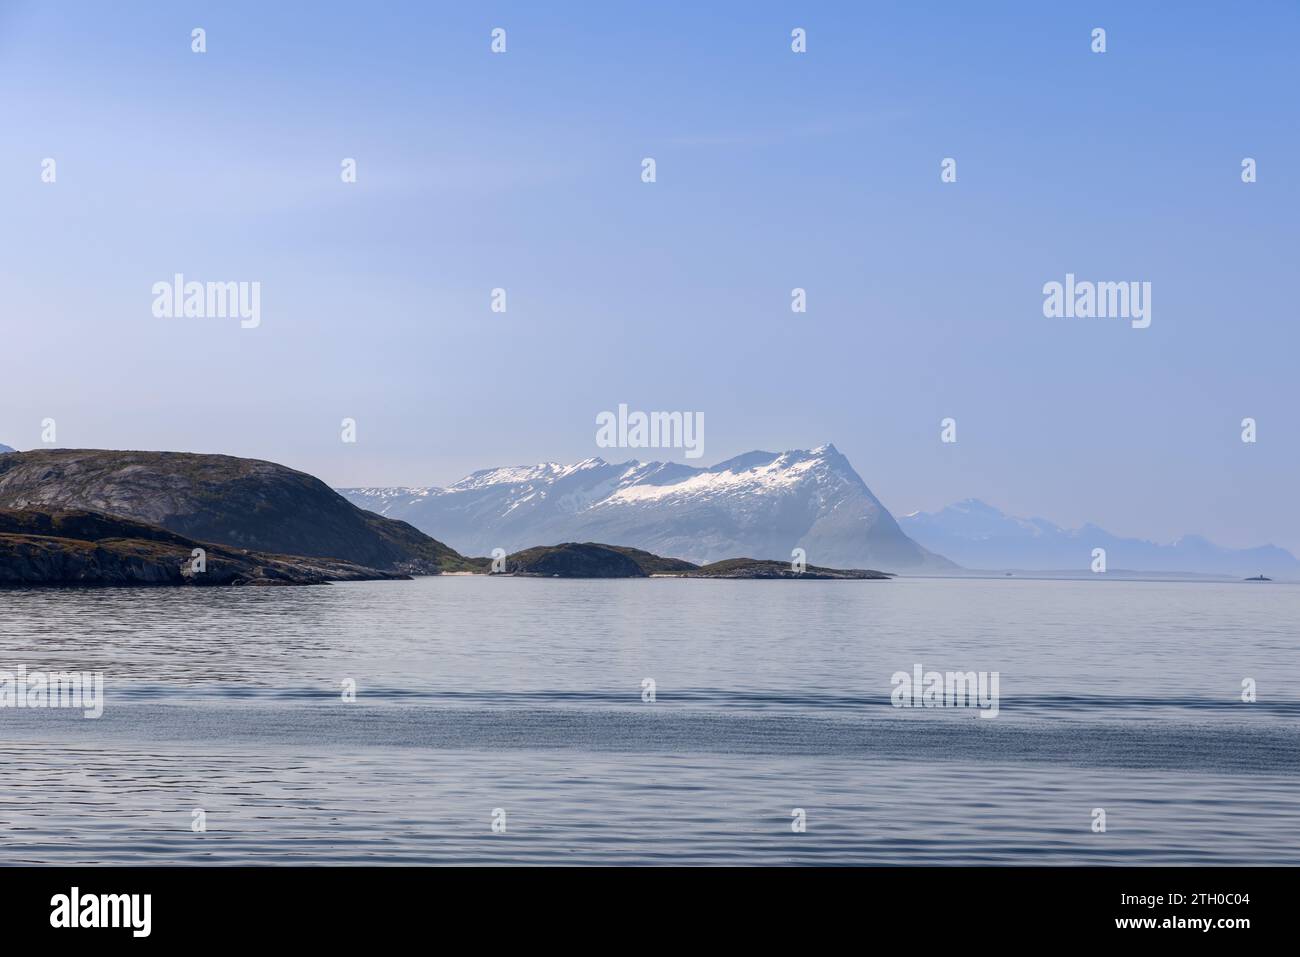 Una pittoresca scena estiva da un traghetto in viaggio verso l'isola di Lofoten, in Norvegia, che mostra il Mare del Nord con acque tranquille e aspre montagne Foto Stock